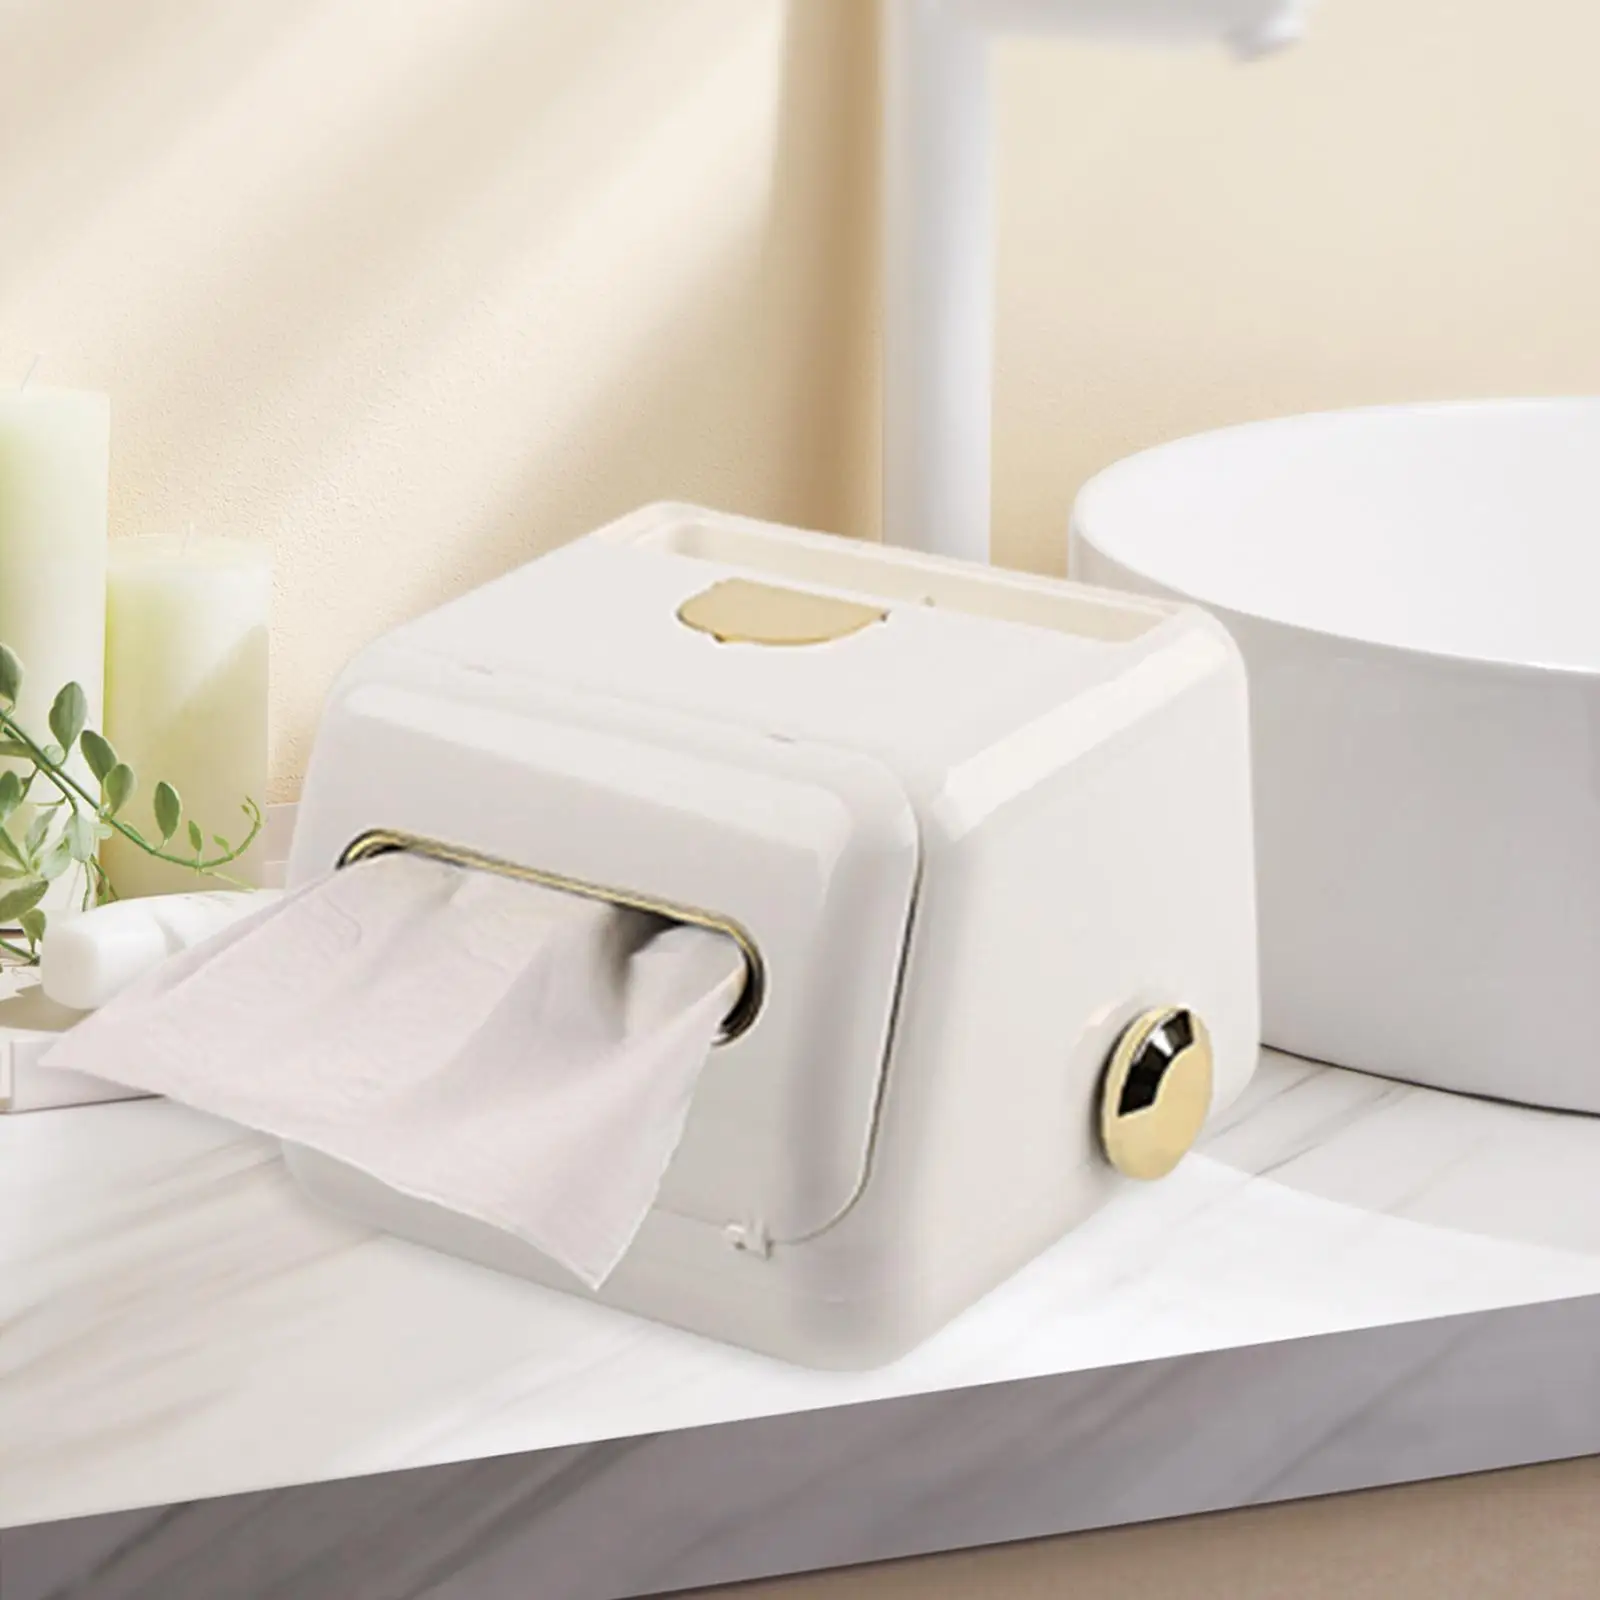 Multifunctional Tissue Cover Tissue Dispenser with Spring Napkin Dispenser Tissue Box Holder for Living Room Dining Table